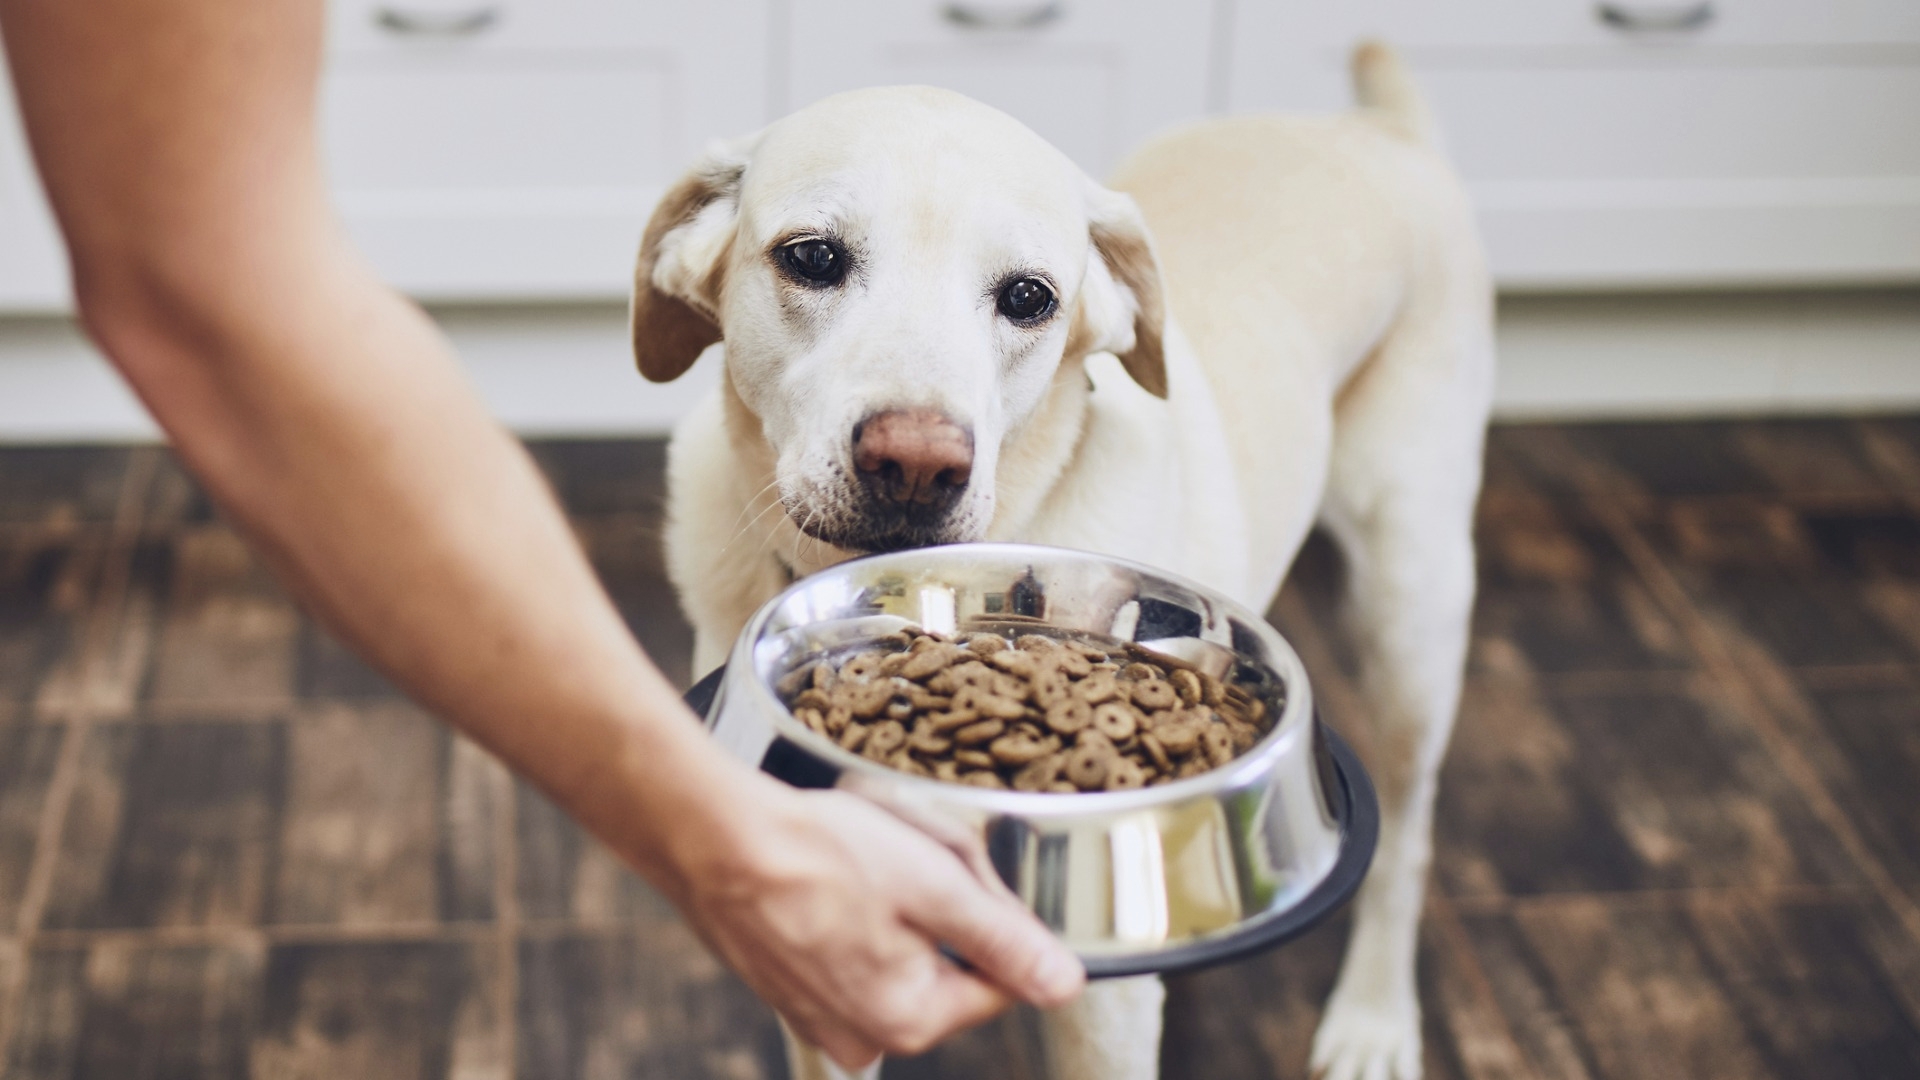 Sekä ruoka-aineallergia että atopia alkavat koiralla jo nuorena. Jos koiran ihon kutina alkaa alle puolen vuoden iässä, syynä on todennäköisemmin ruoka-aineallergia kuin koirien atopia. 